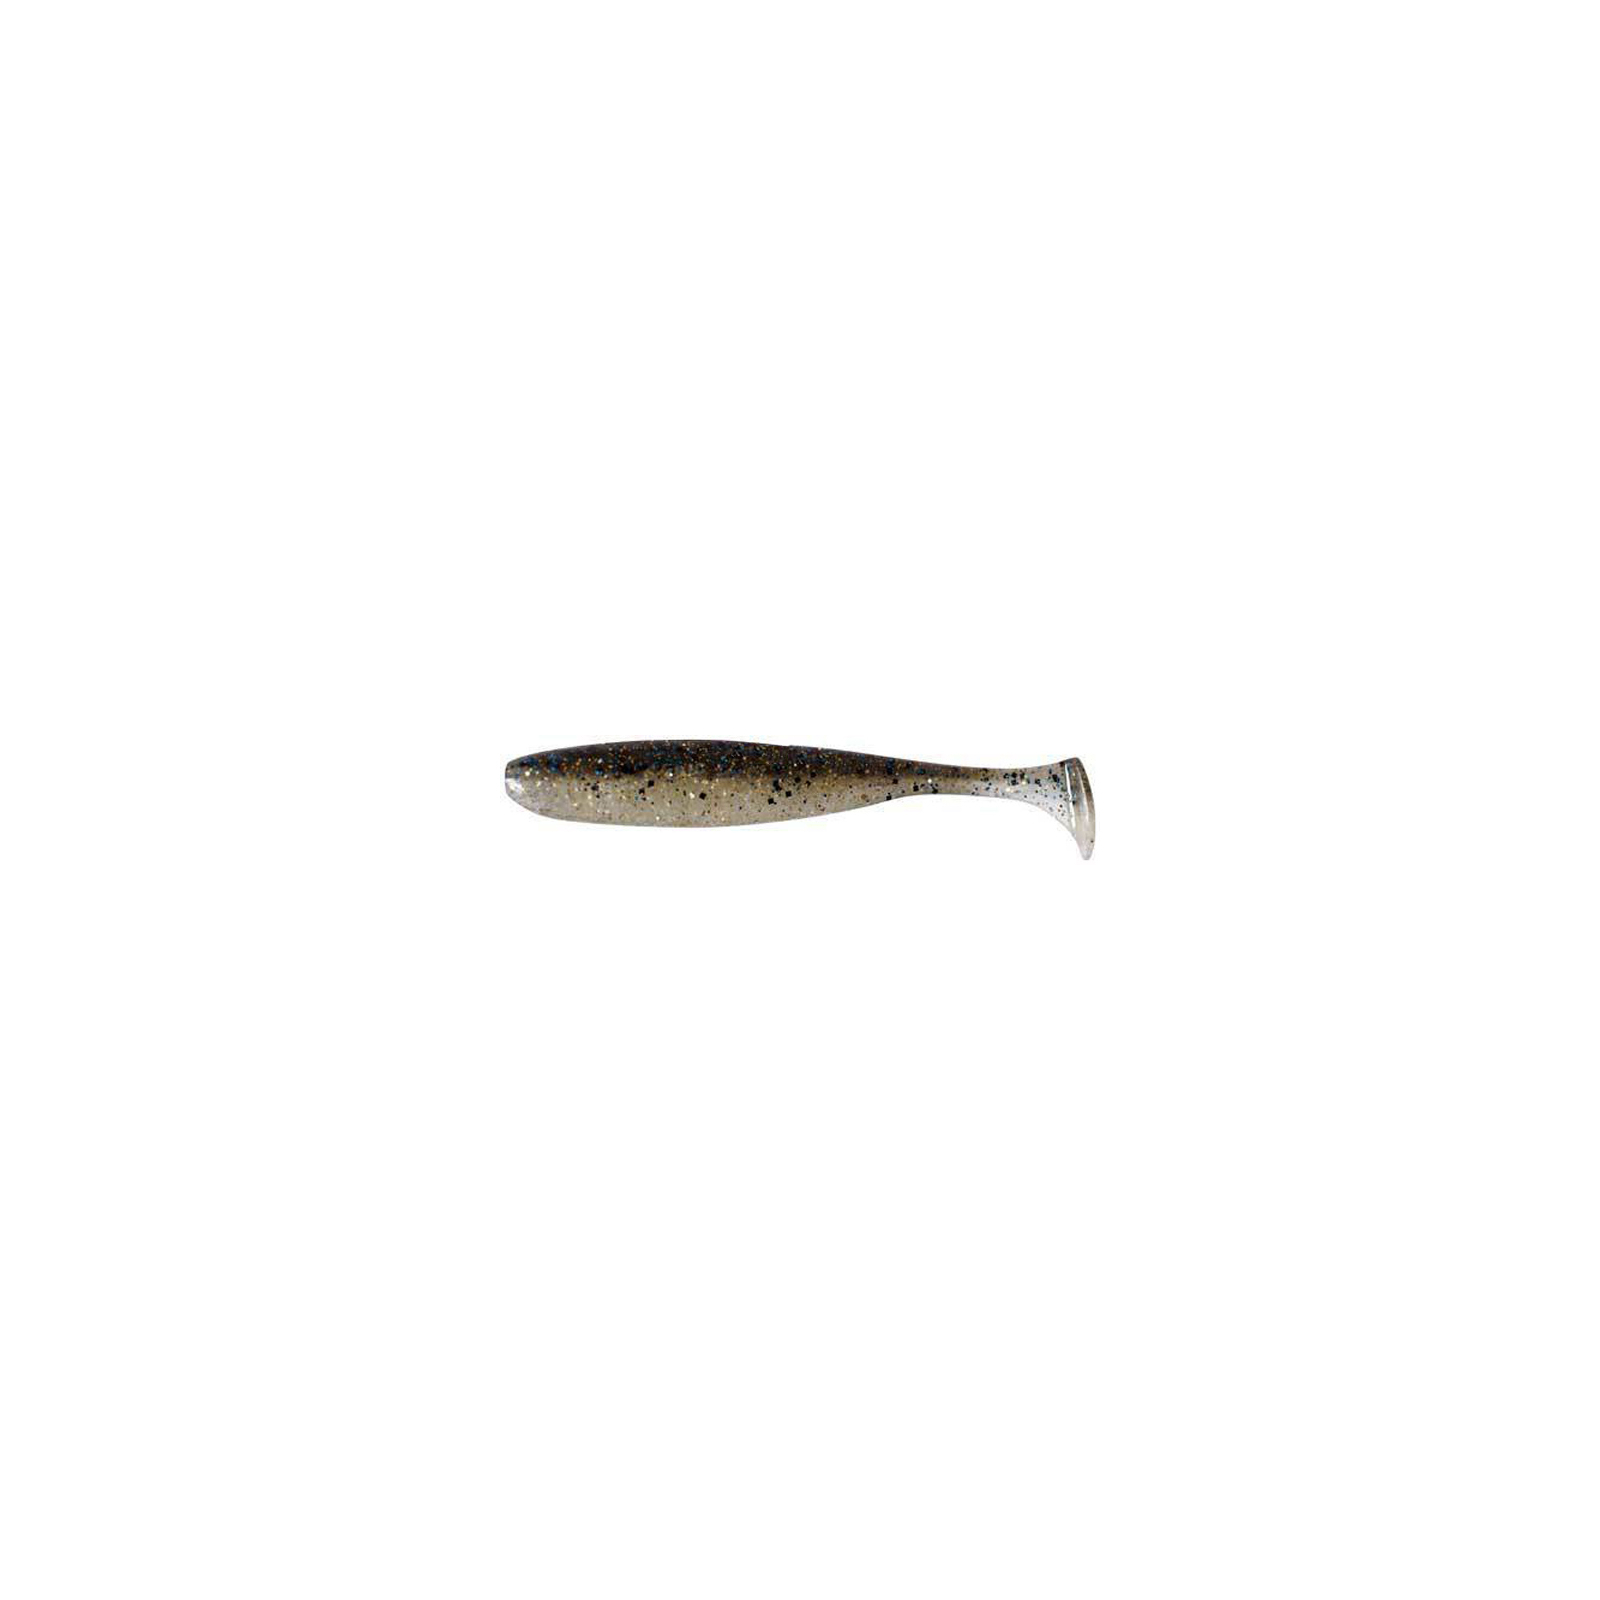 Силикон рыболовный Keitech Easy Shiner 4" (7 шт/упак) ц:418 bluegill flash (1551.01.41)